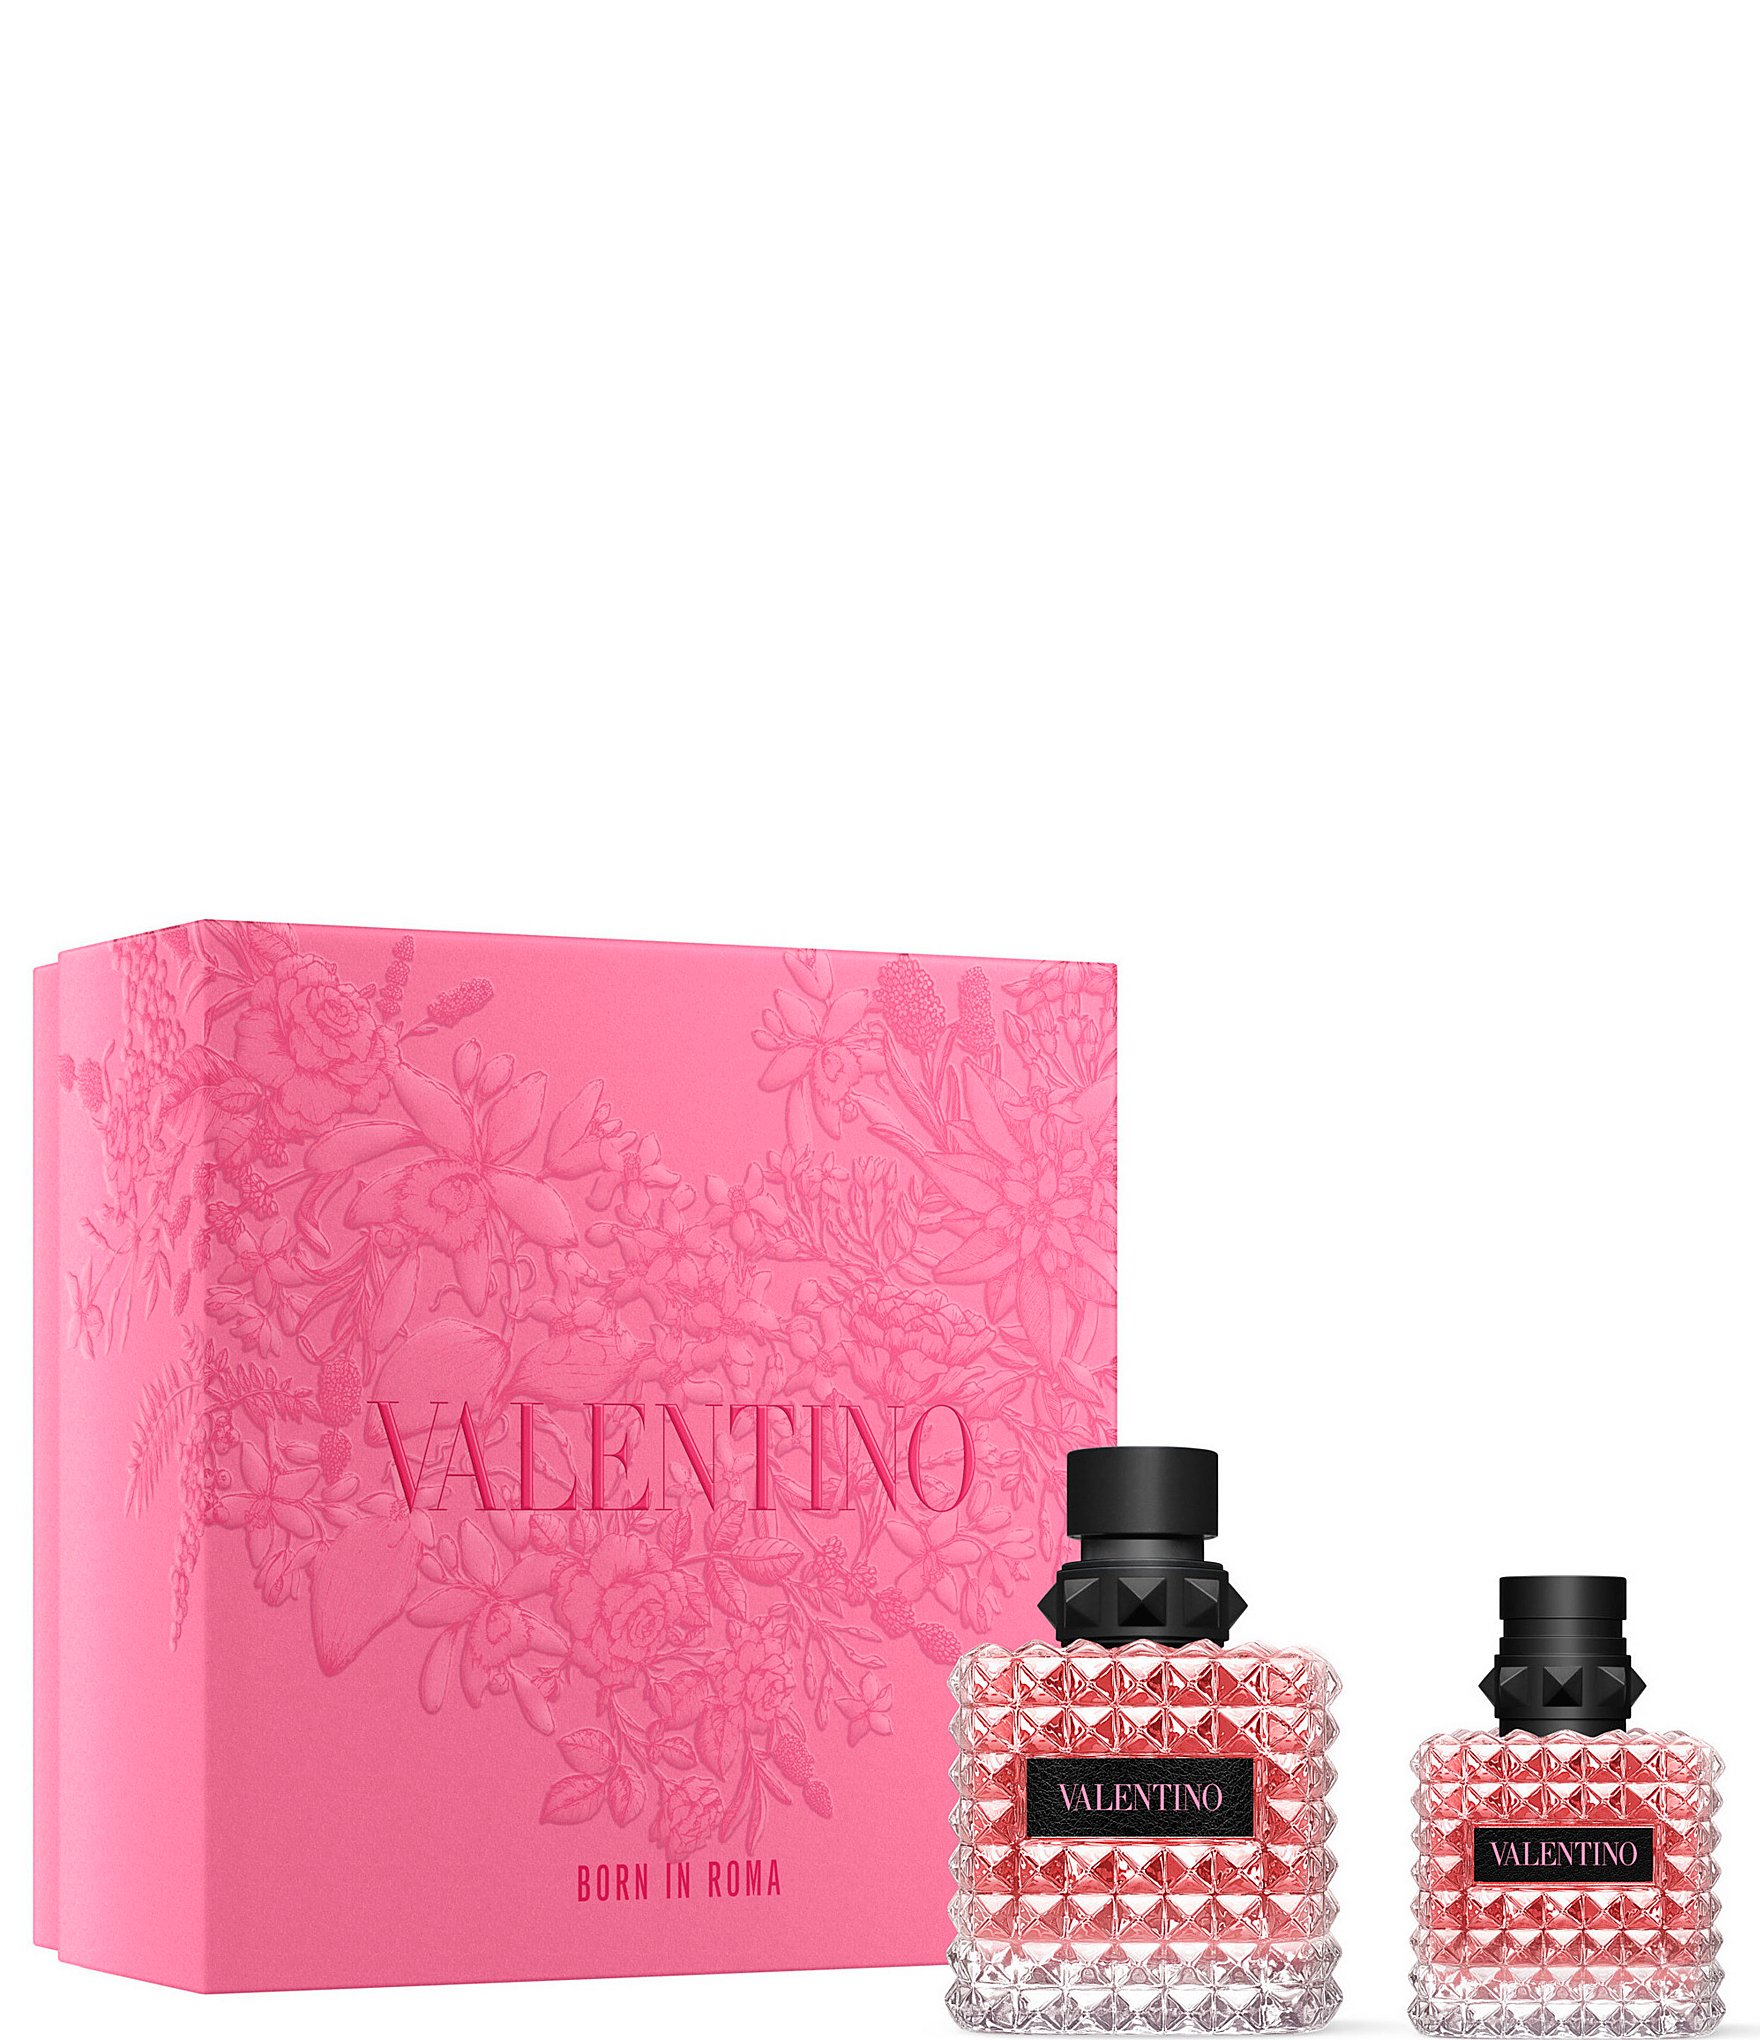 Fragrance, Perfume, & Cologne for Women & Men